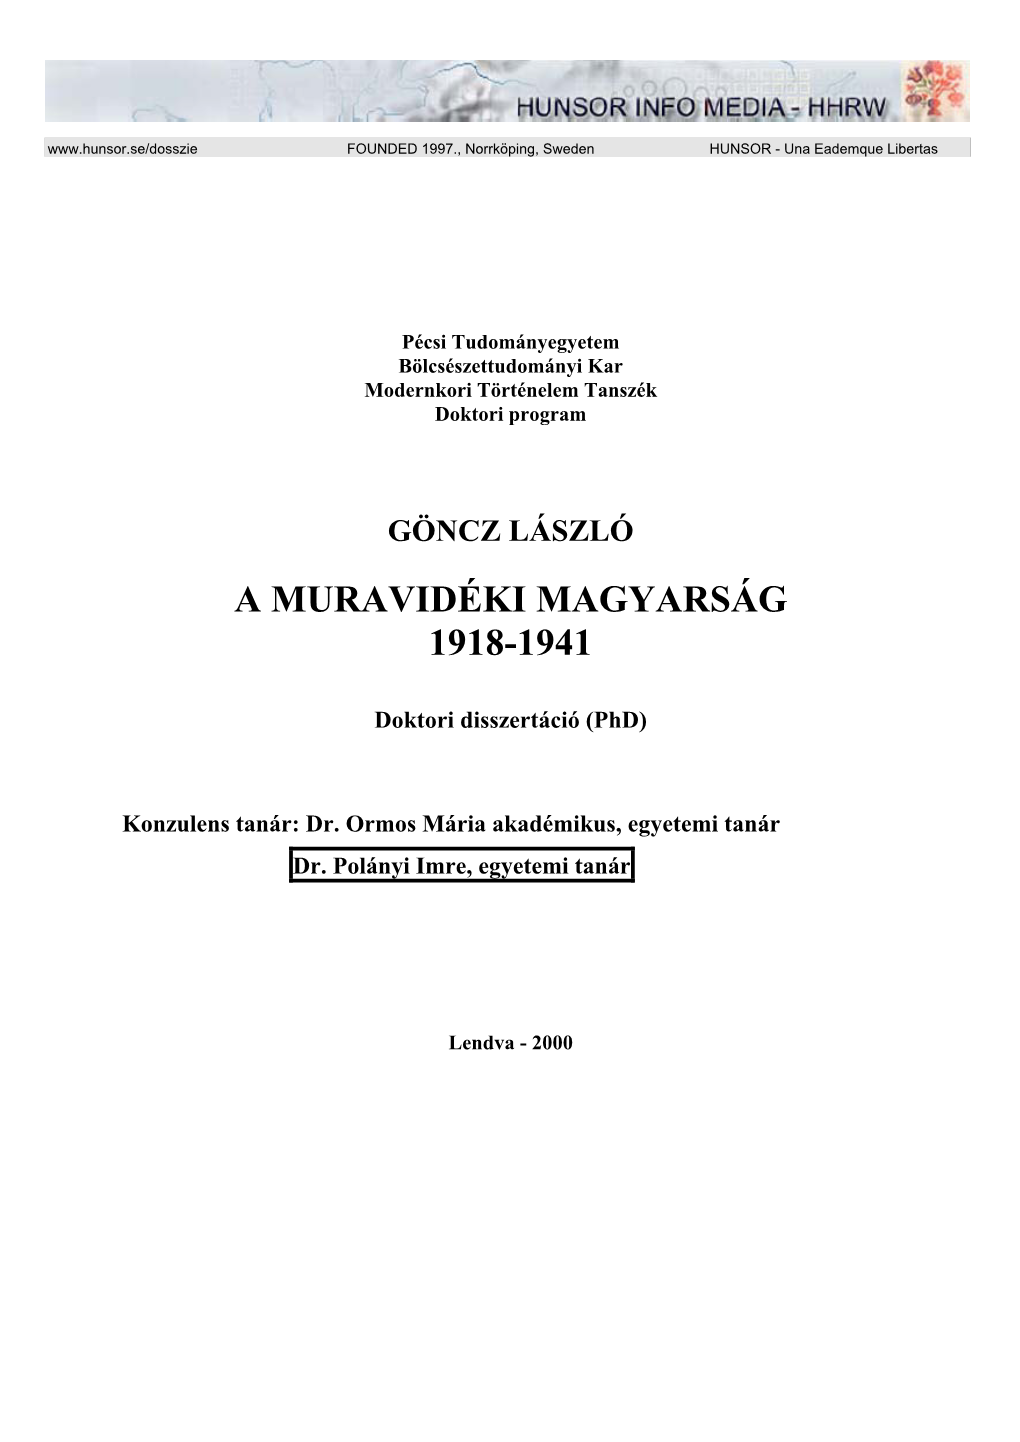 A Muravidéki Magyarság 1918-1941